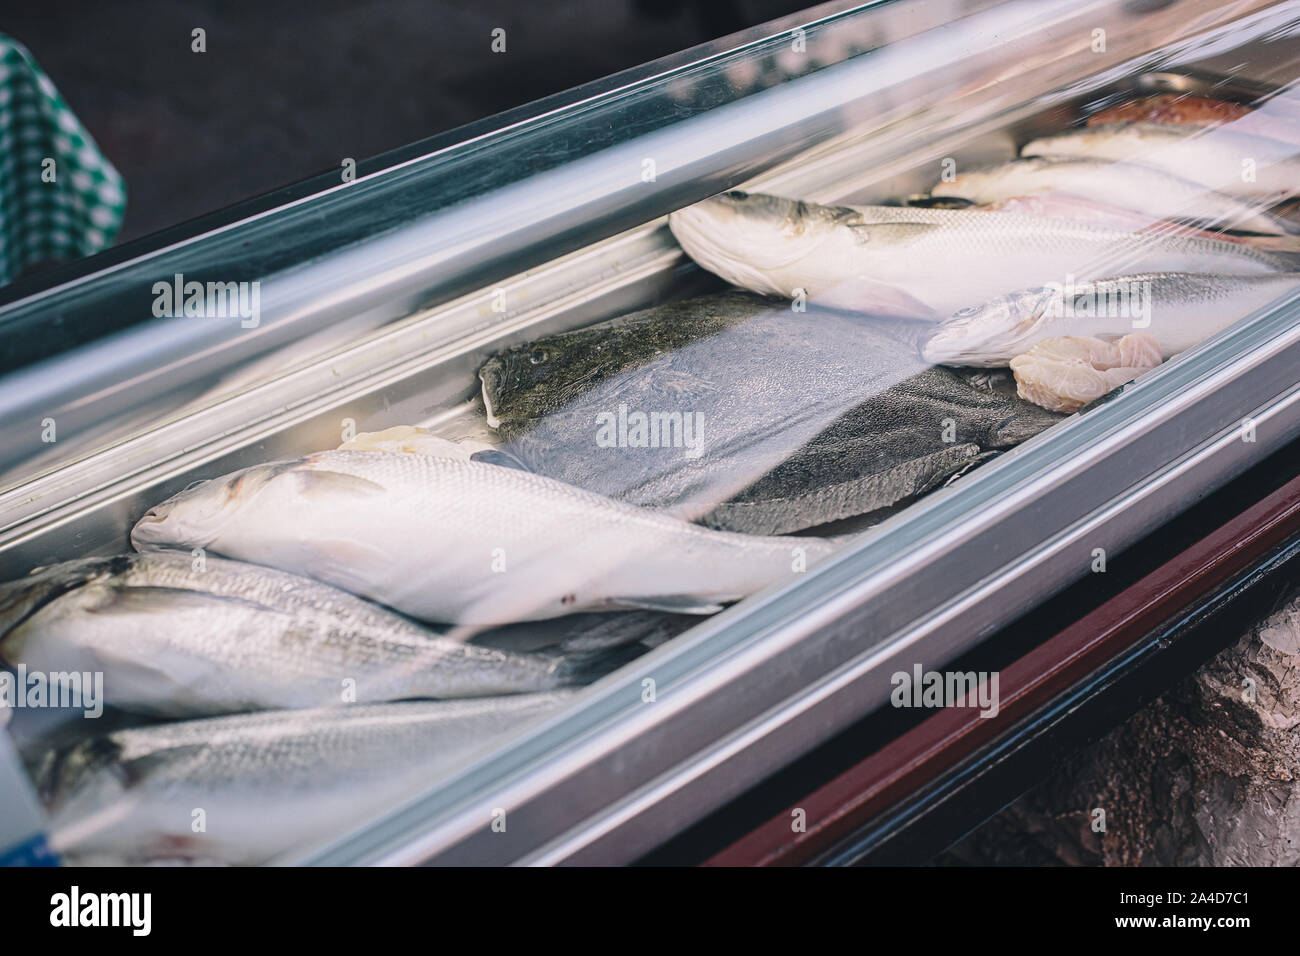 Frischen, rohen Fisch im Kühlschrank der Supermarkt oder Restaurant in Eis.  Meeresfrüchte gesundes Essen Konzept Stockfotografie - Alamy